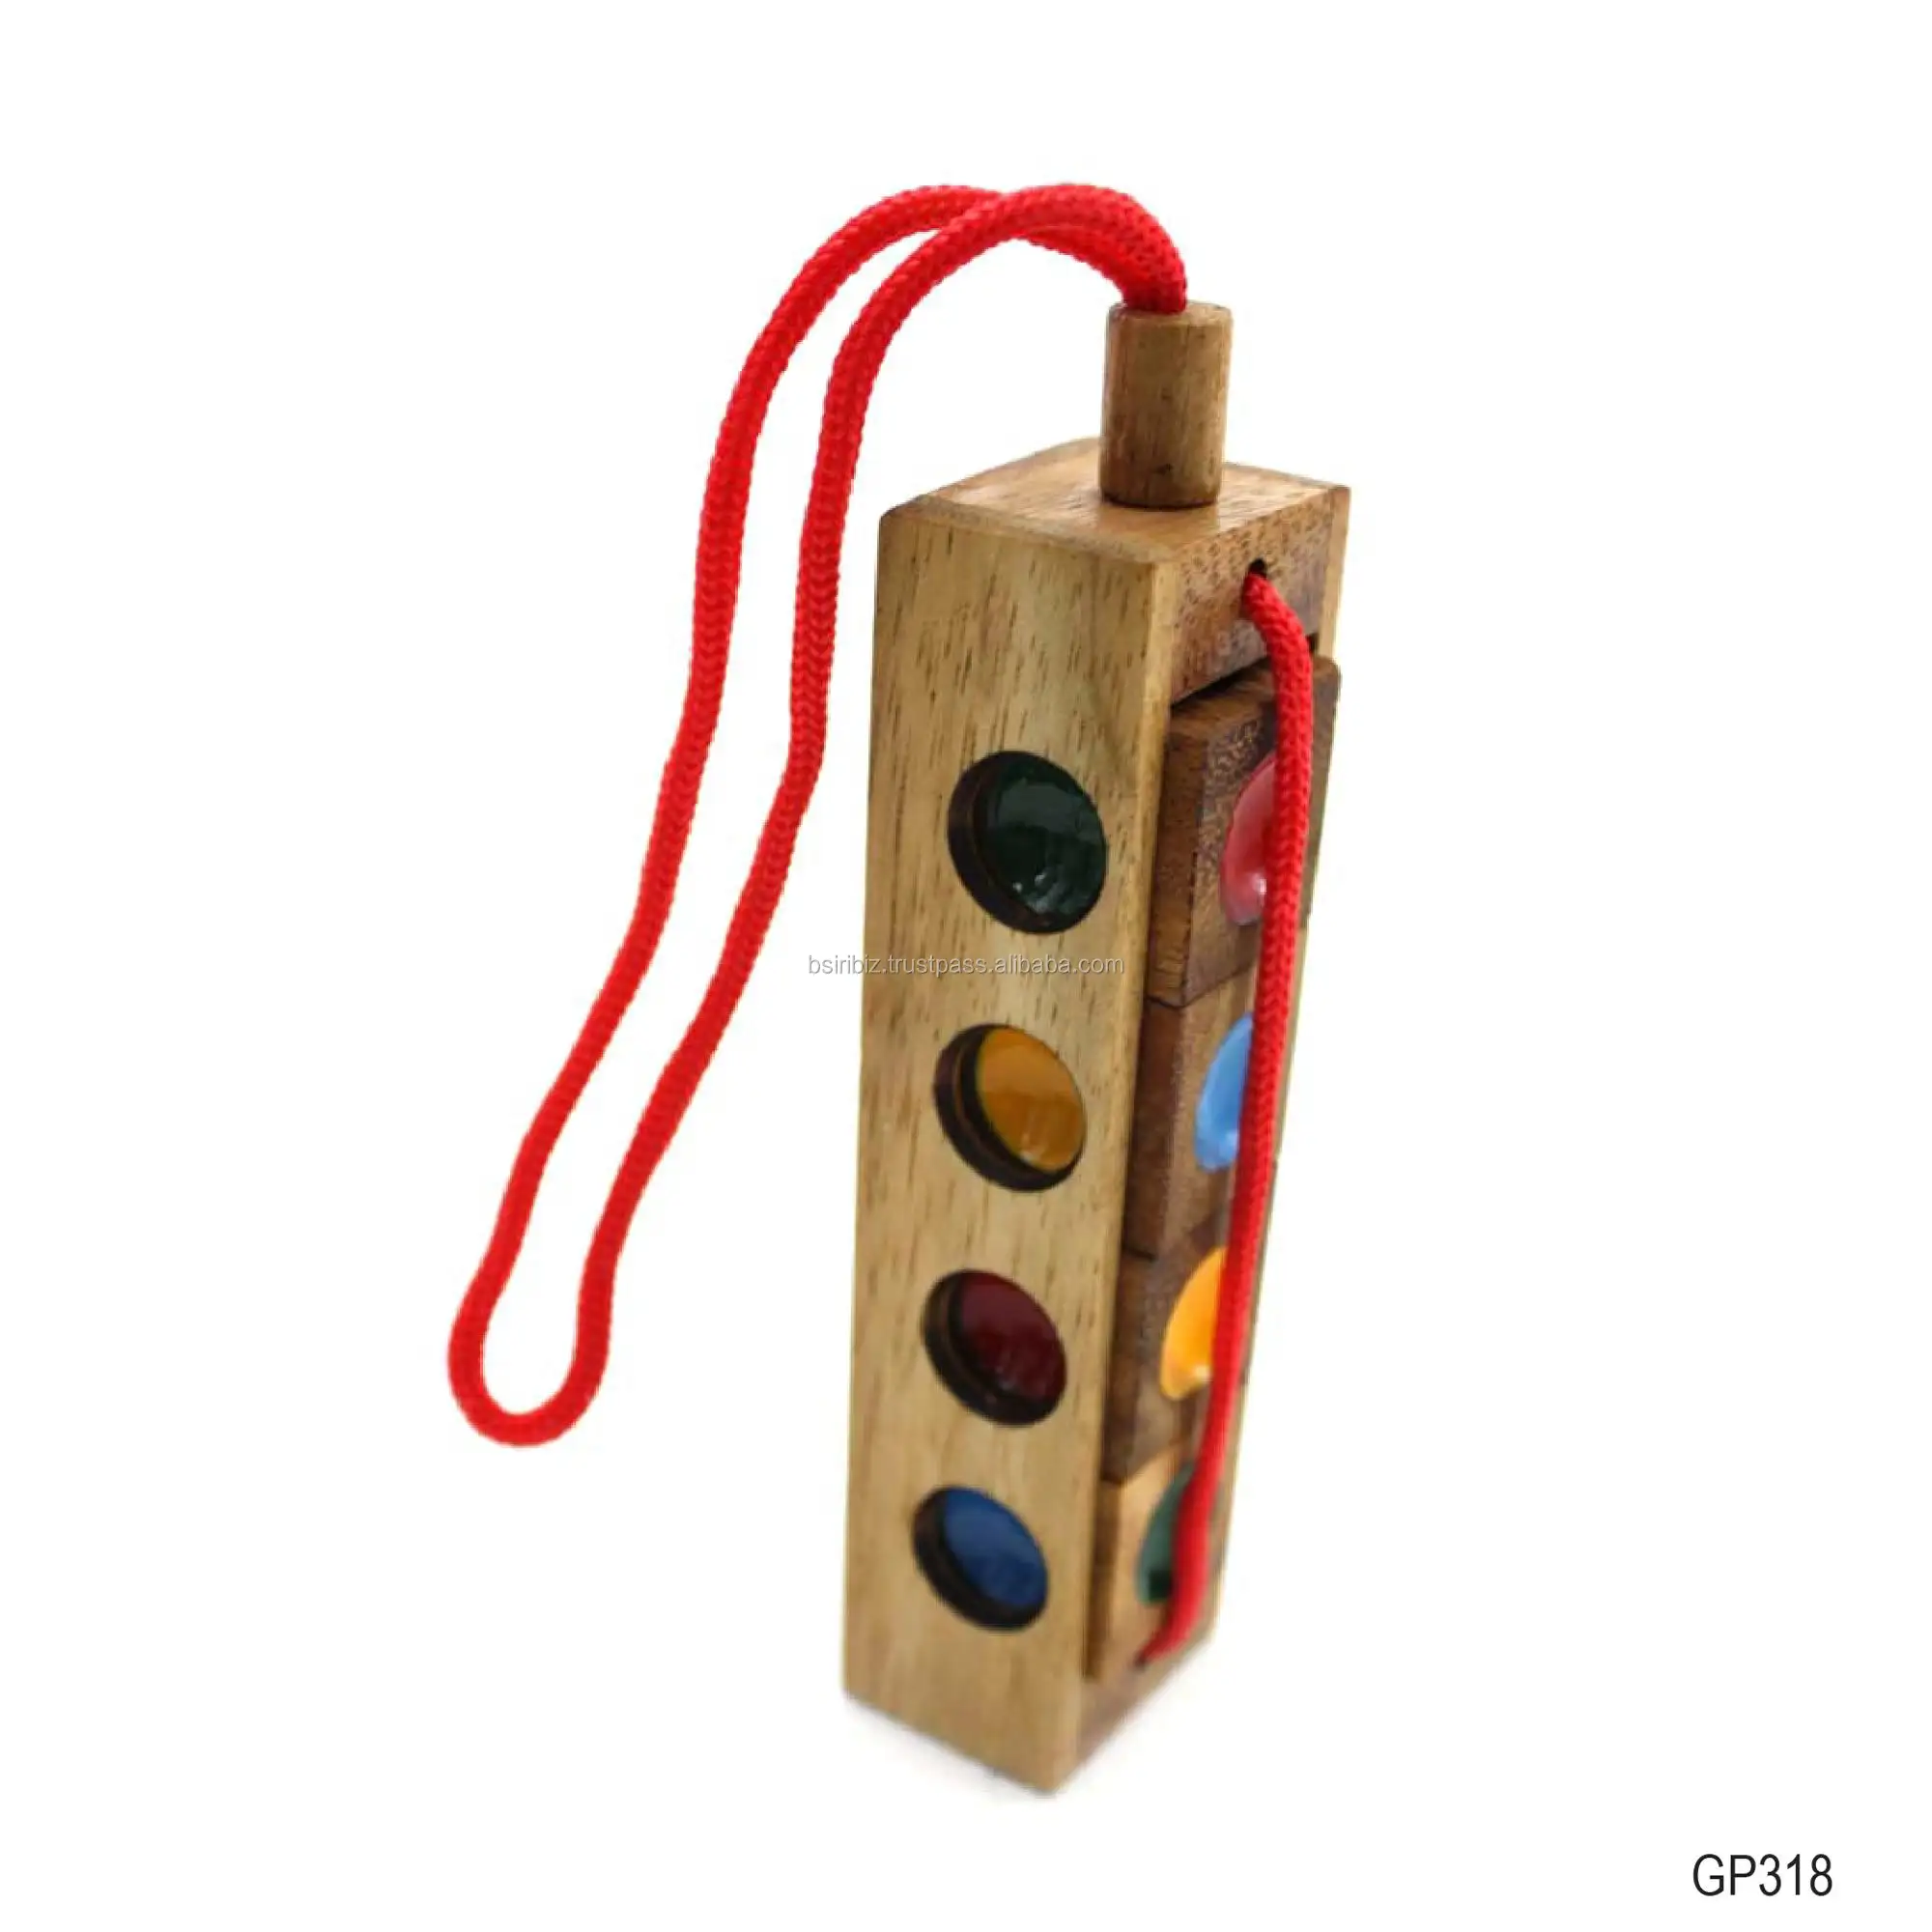 Giocattoli in legno pazzi quattro semafori di piccole dimensioni rendono il design in legno naturale per bambini e adulti giocattolo attivo ed educativo